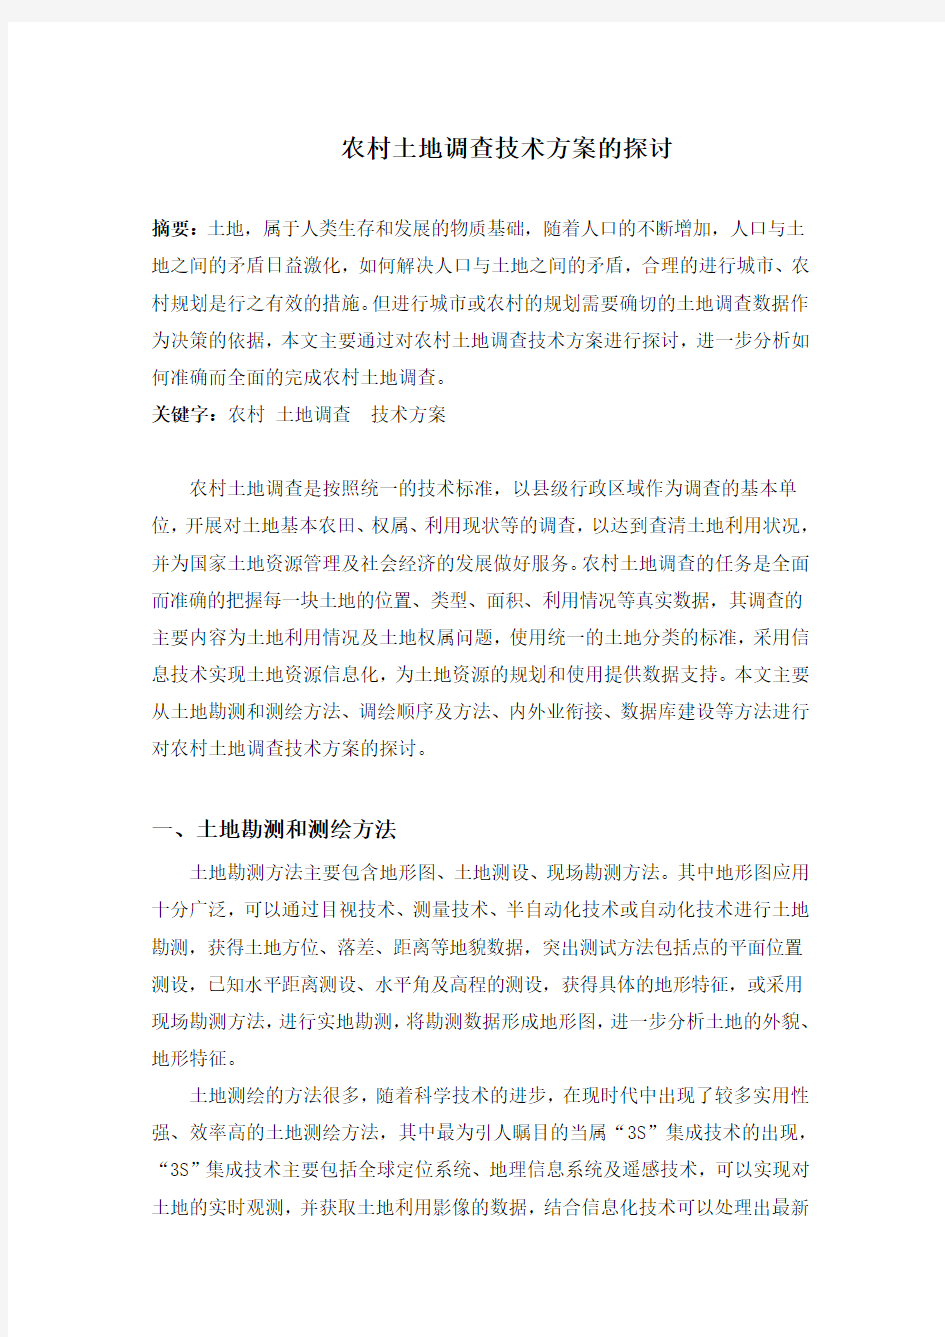 5.11 龙鑫   农村土地调查技术方案的探讨  3000字符